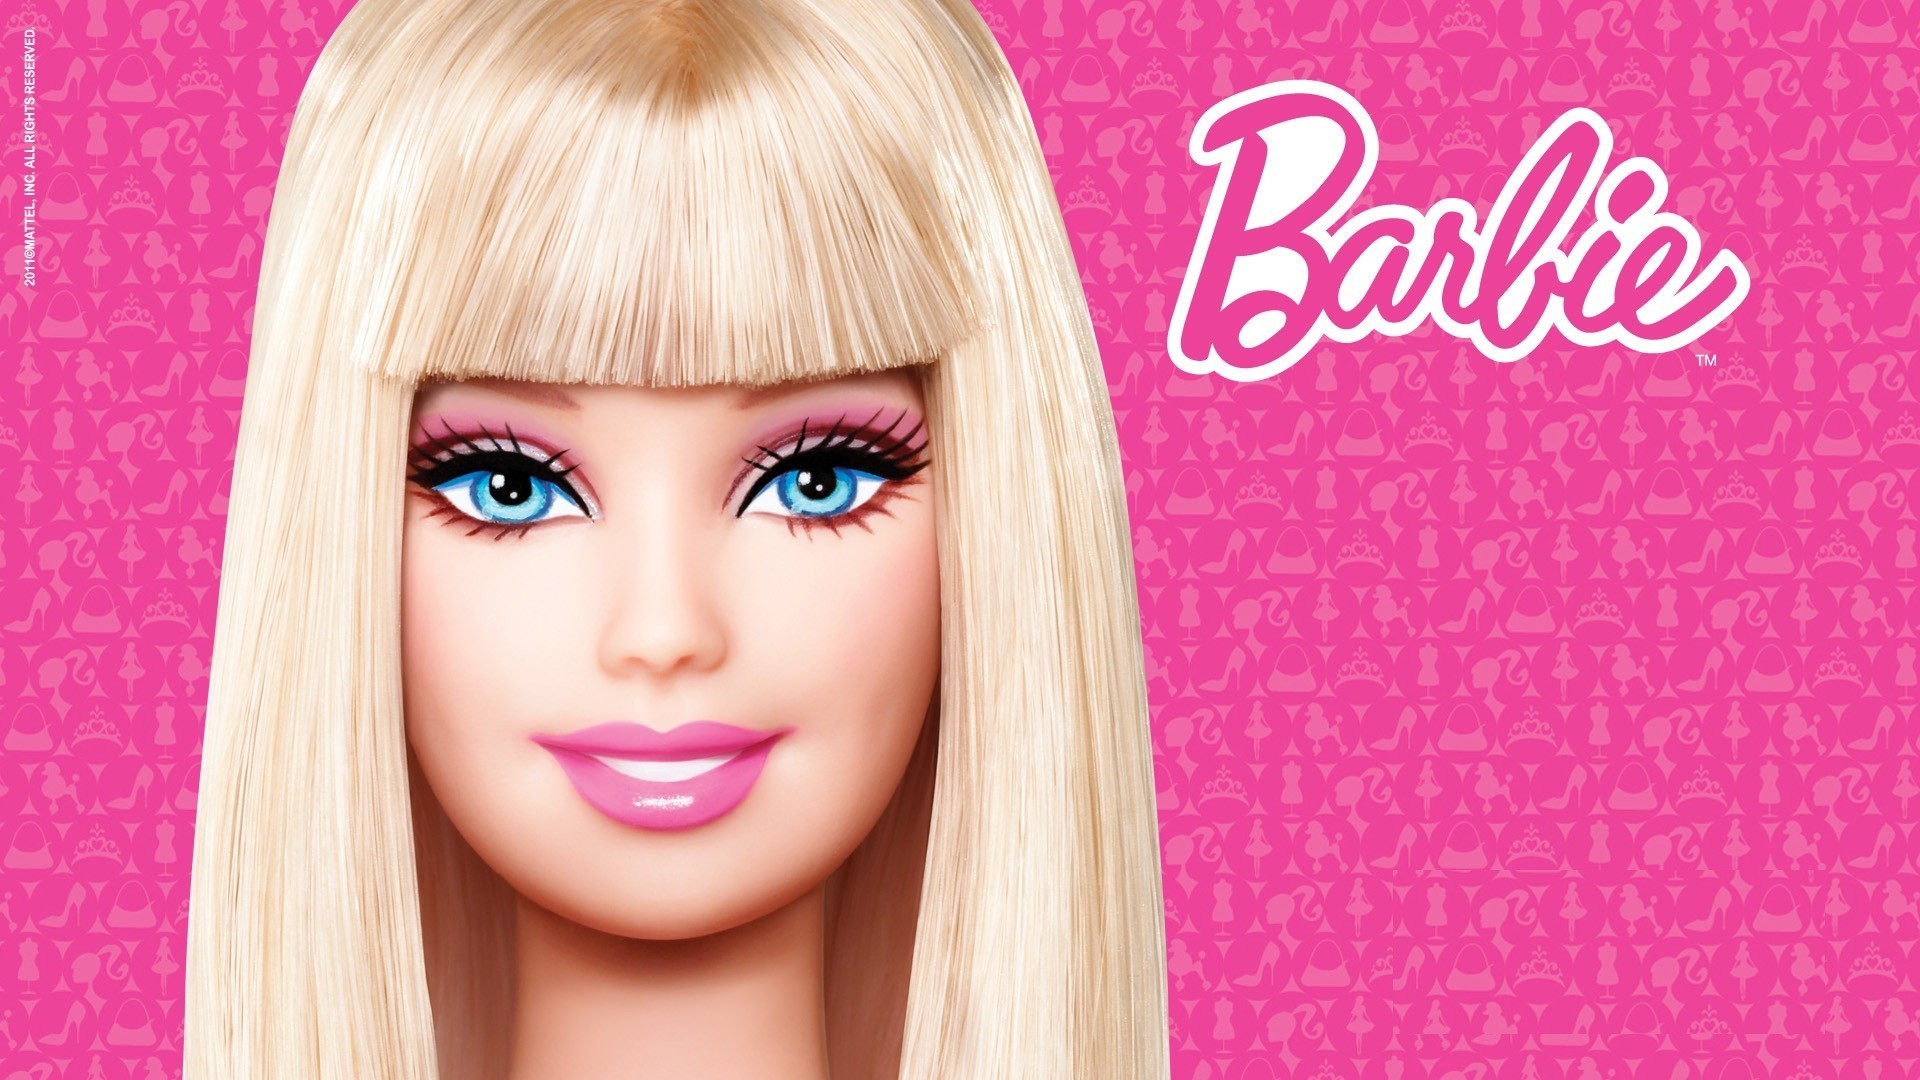 Cialda per torte a tema Barbie, bellissima per ogni occasione